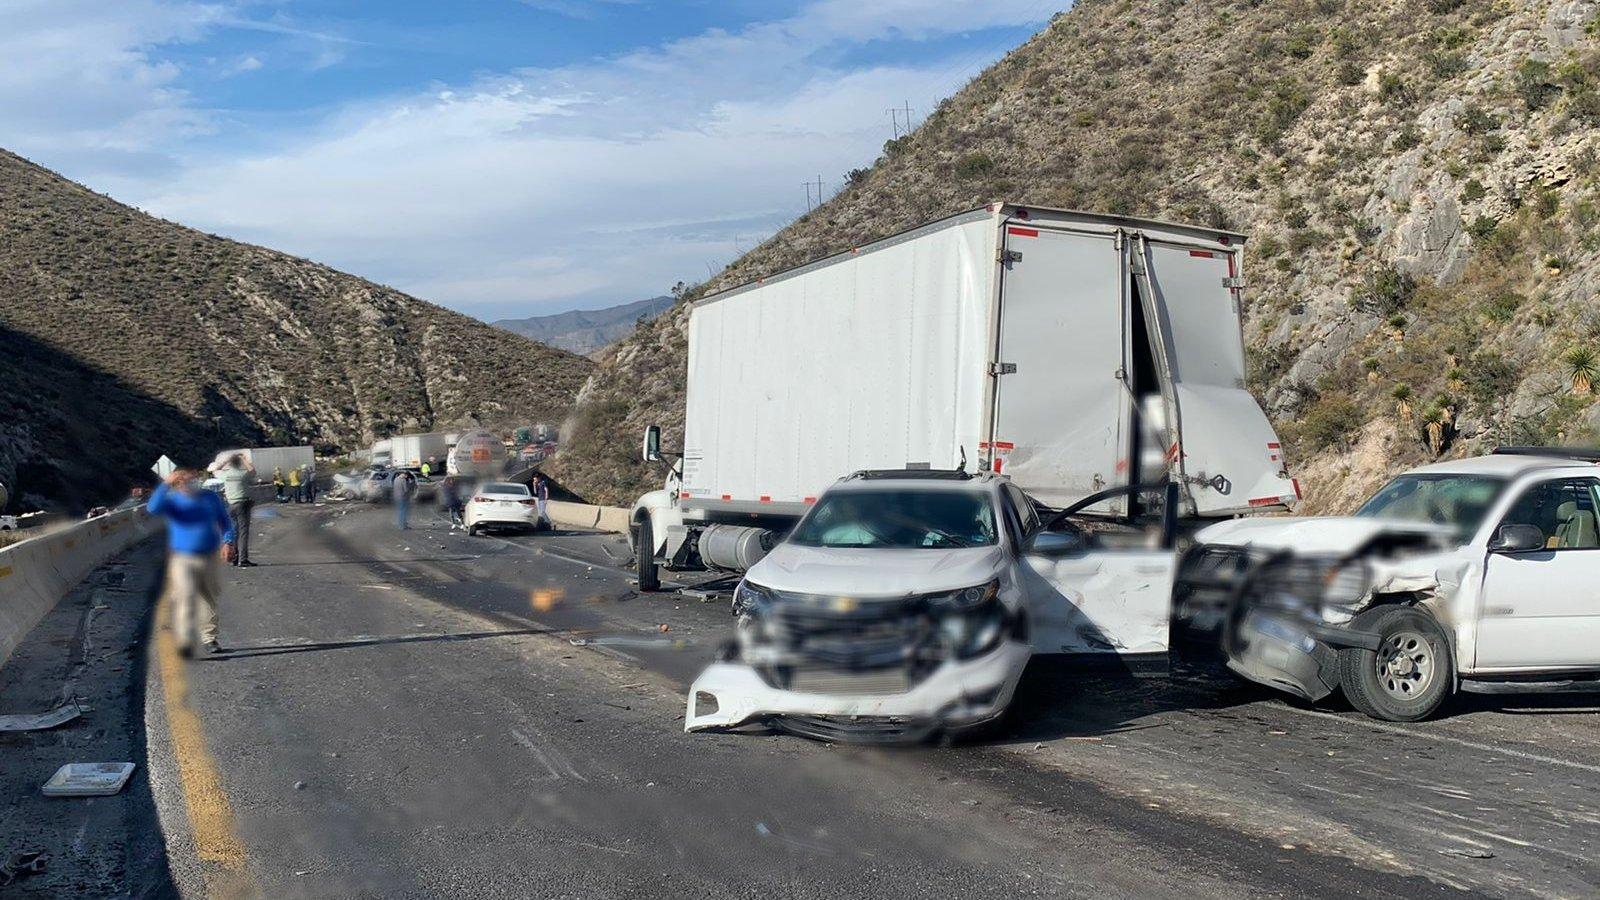 Choque de tráiler con 16 automóviles deja 4 muertos en Coahuila